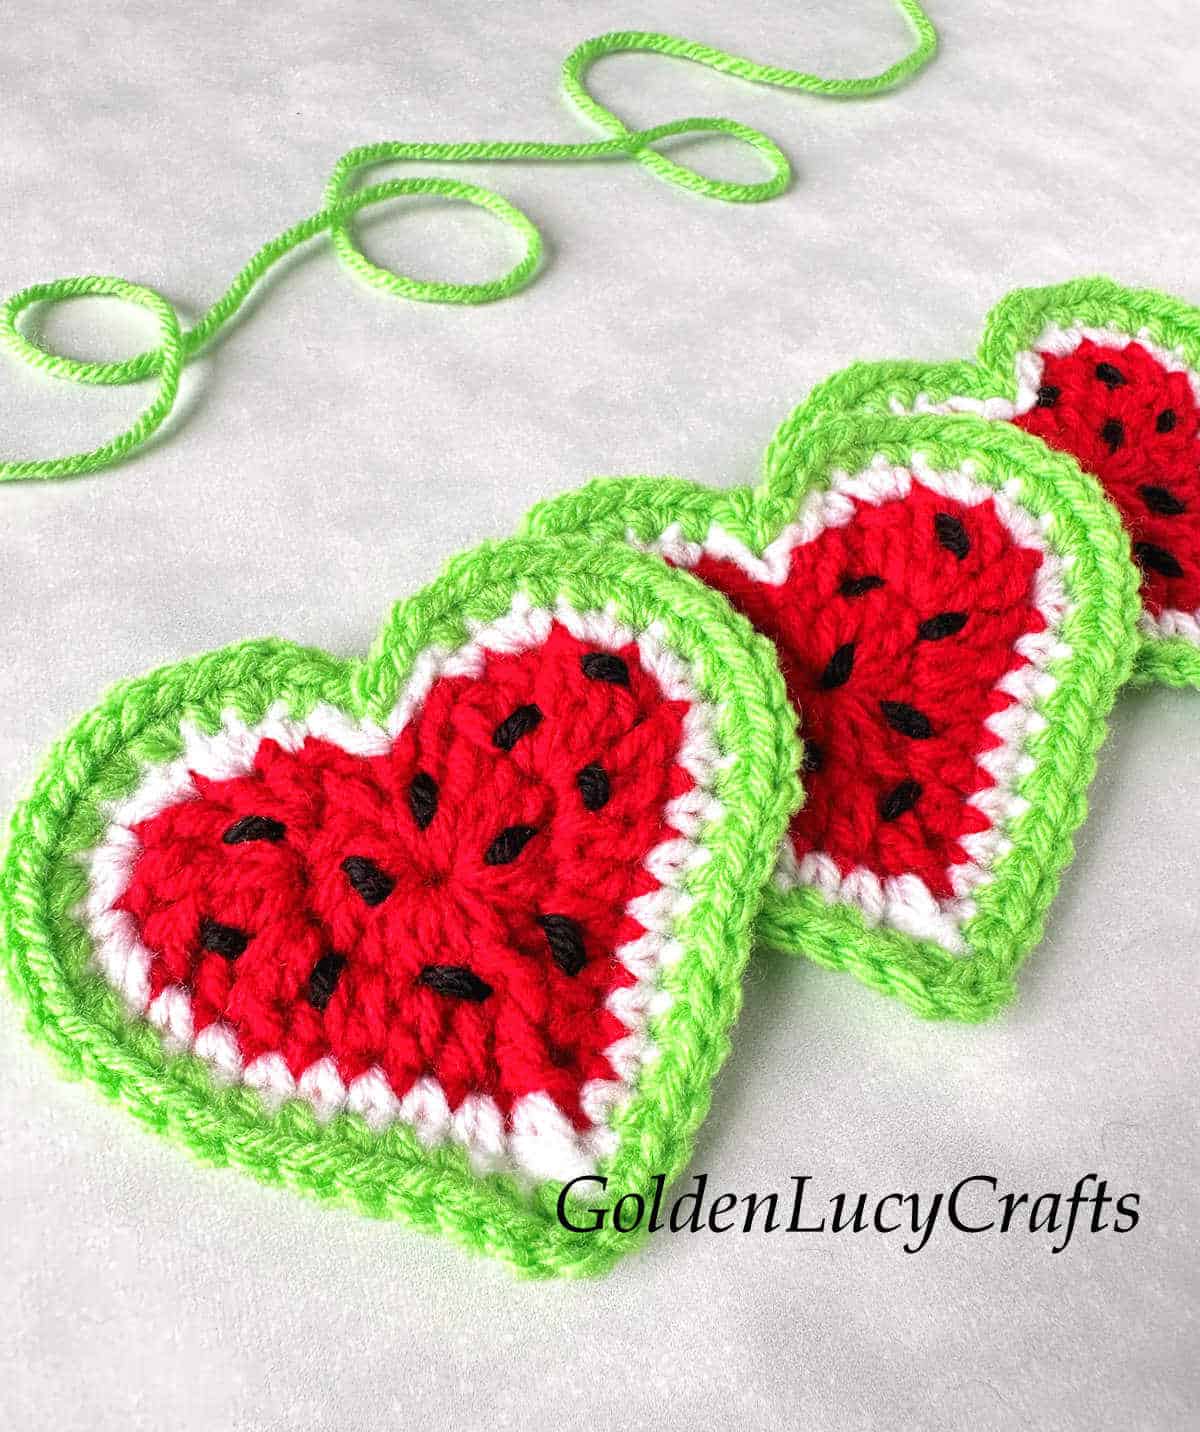 Crochet watermelon hearts.